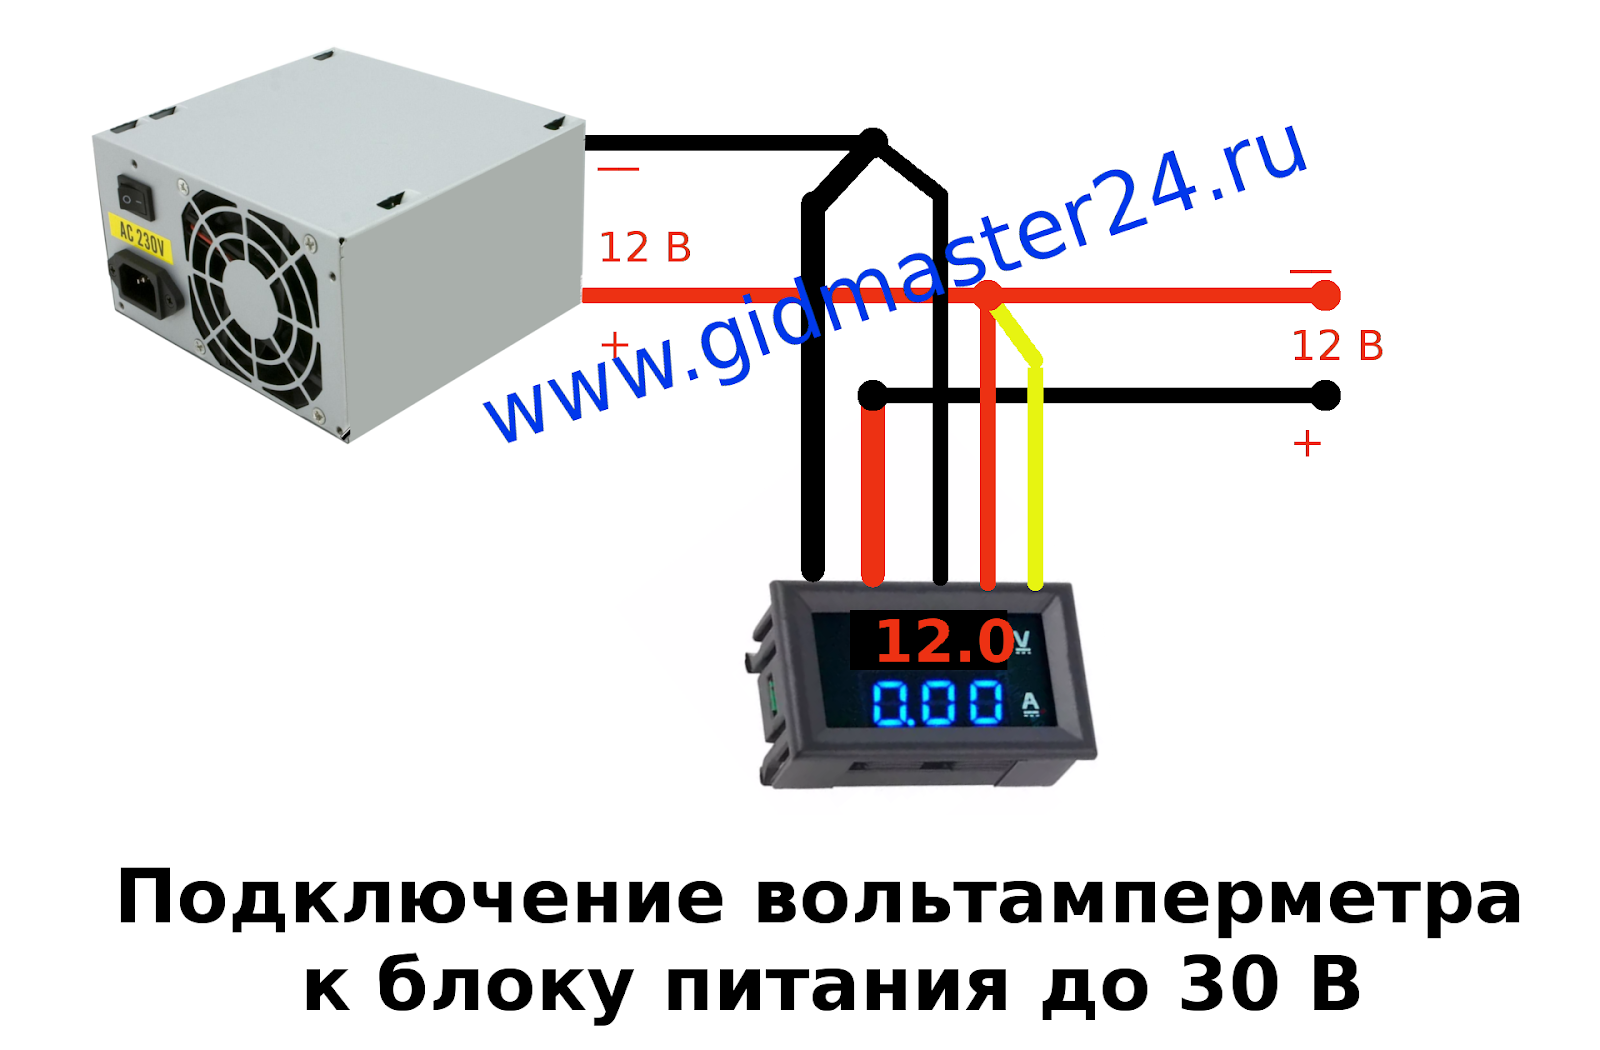 Цифровой вольтметр амперметр постоянного тока 0 100 в 10 а схема подключения